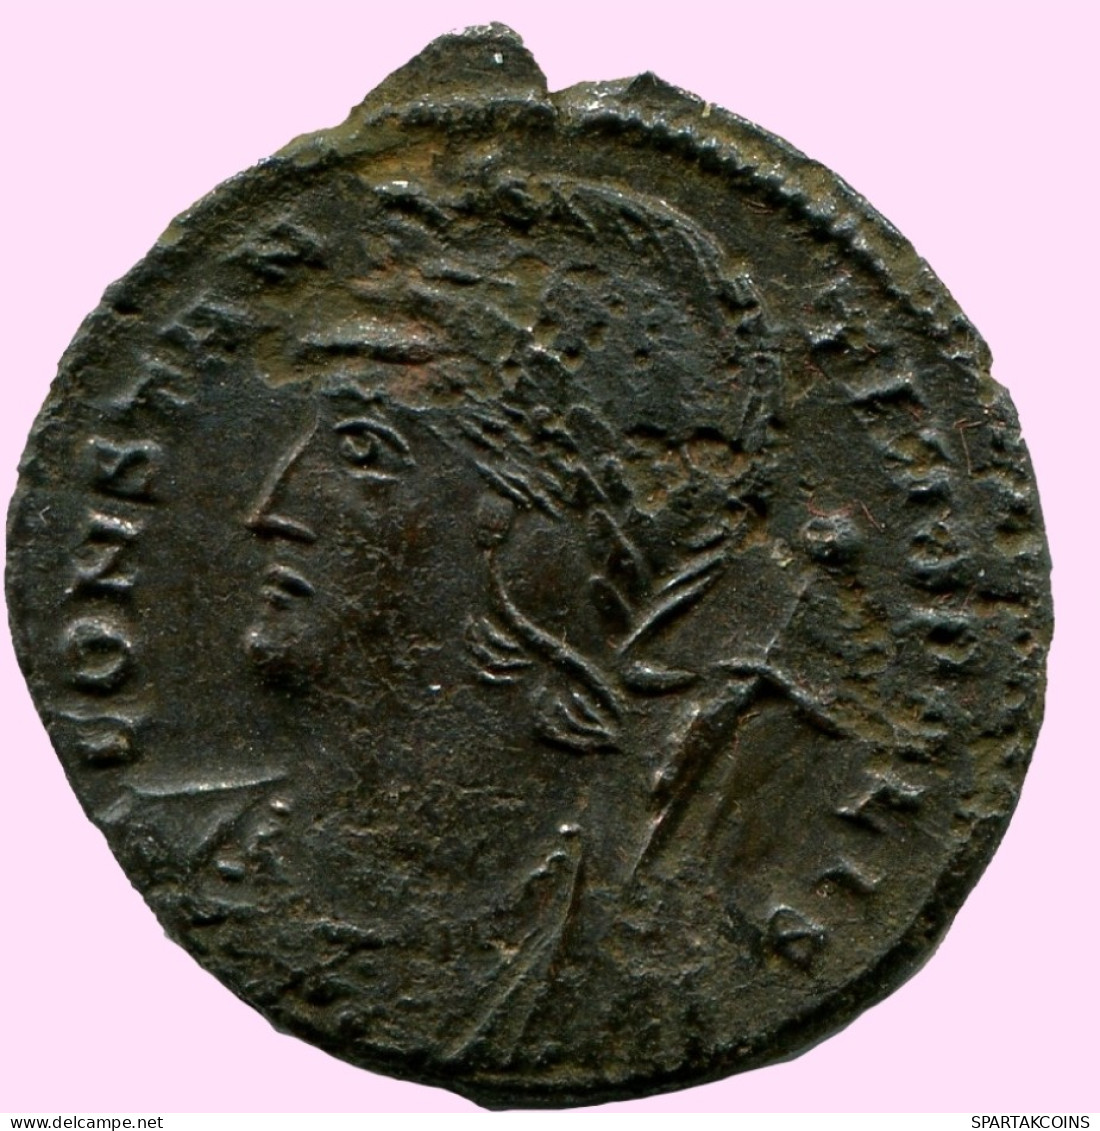 CONSTANTINUS I CONSTANTINOPOLI FOLLIS Romano ANTIGUO Moneda #ANC12070.25.E.A - El Imperio Christiano (307 / 363)